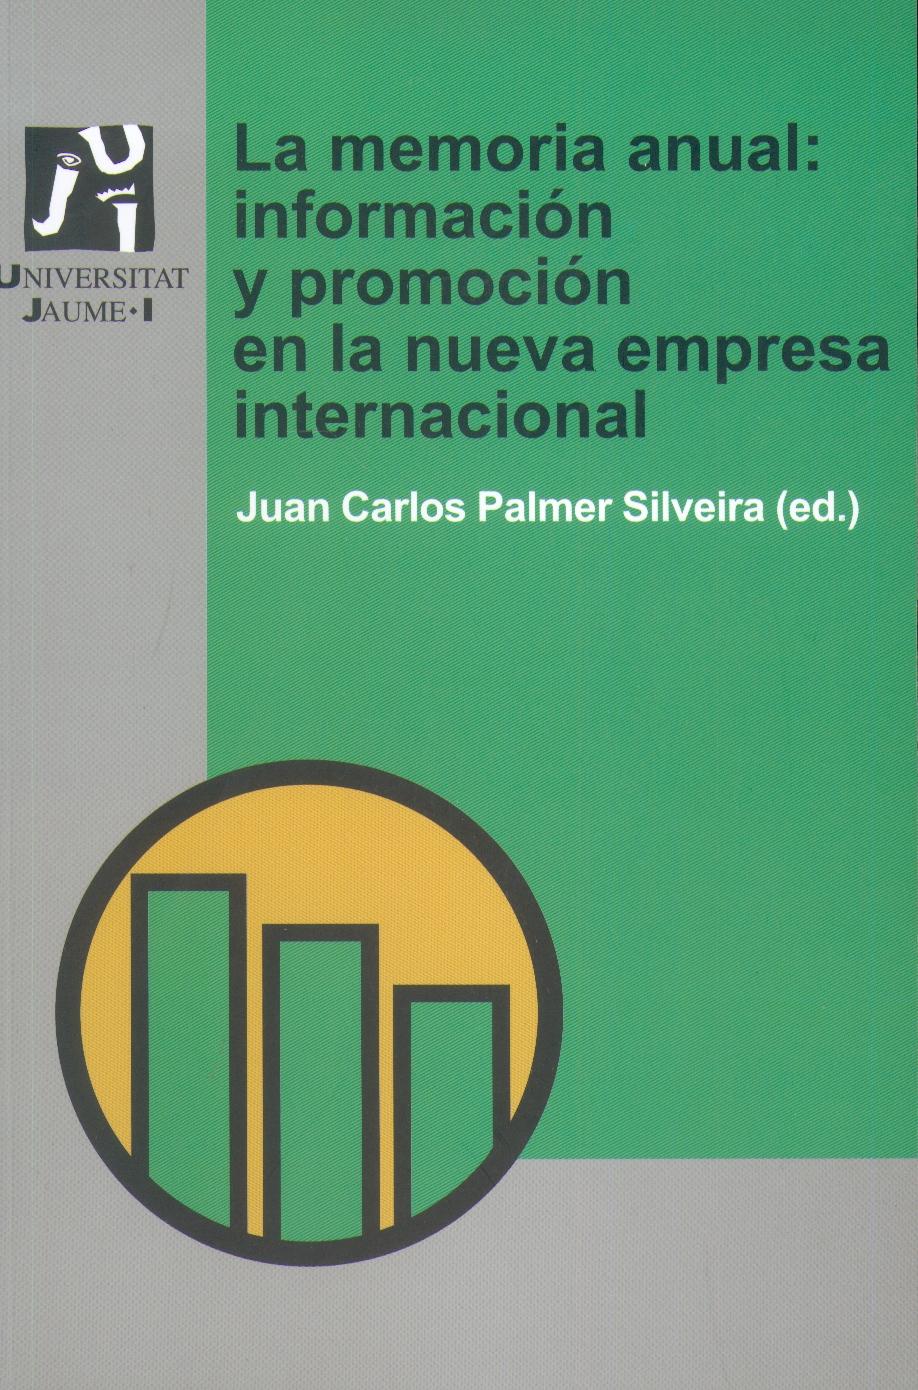 La Memoria Anual "Informacion y Promocion en la Nueva Empresa Internacional". Informacion y Promocion en la Nueva Empresa Internacional